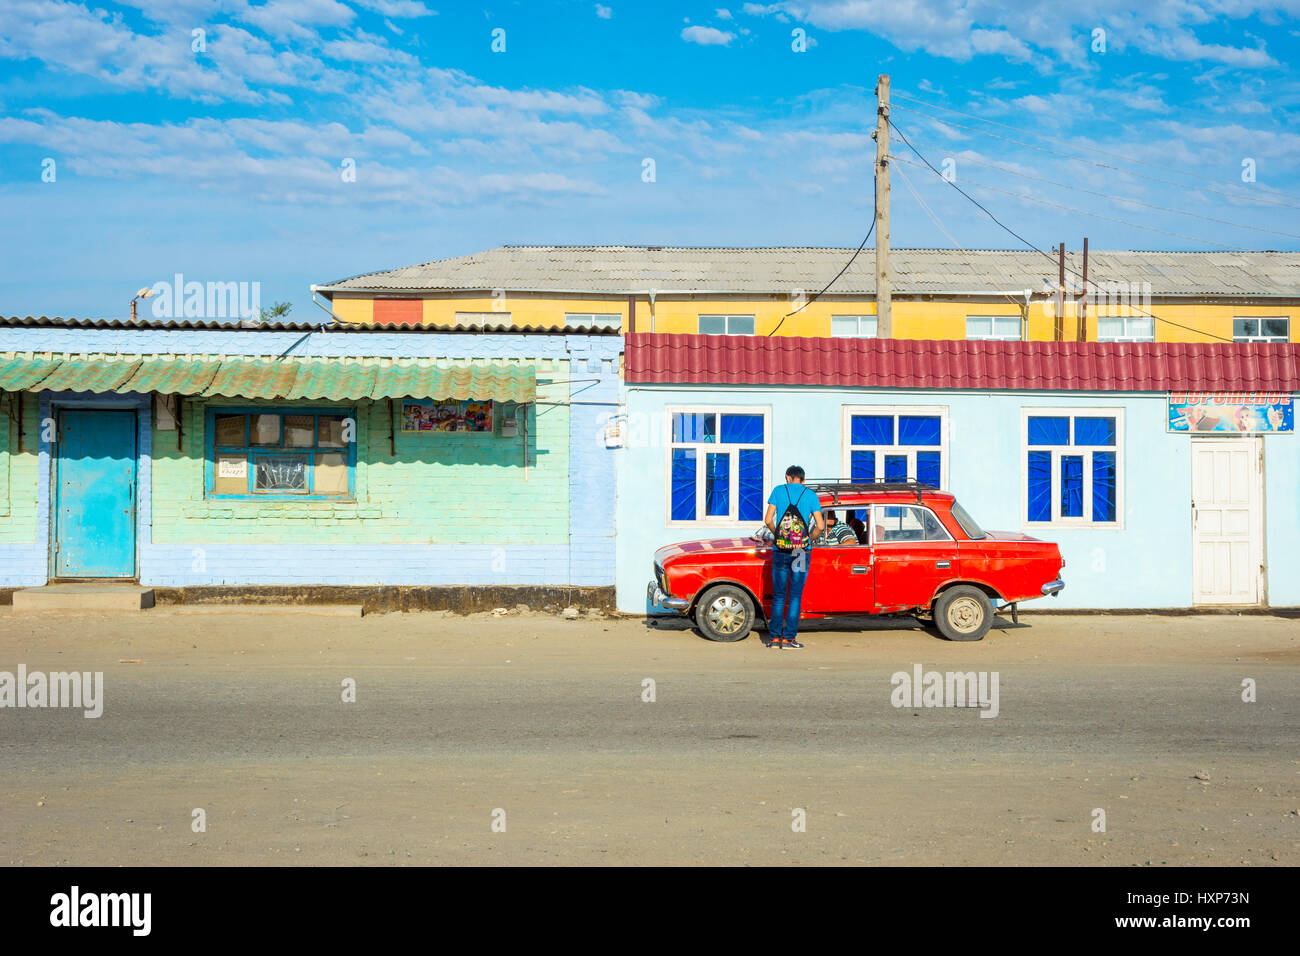 Two men talking at red lada car. Muynak, Uzbekistan Stock Photo